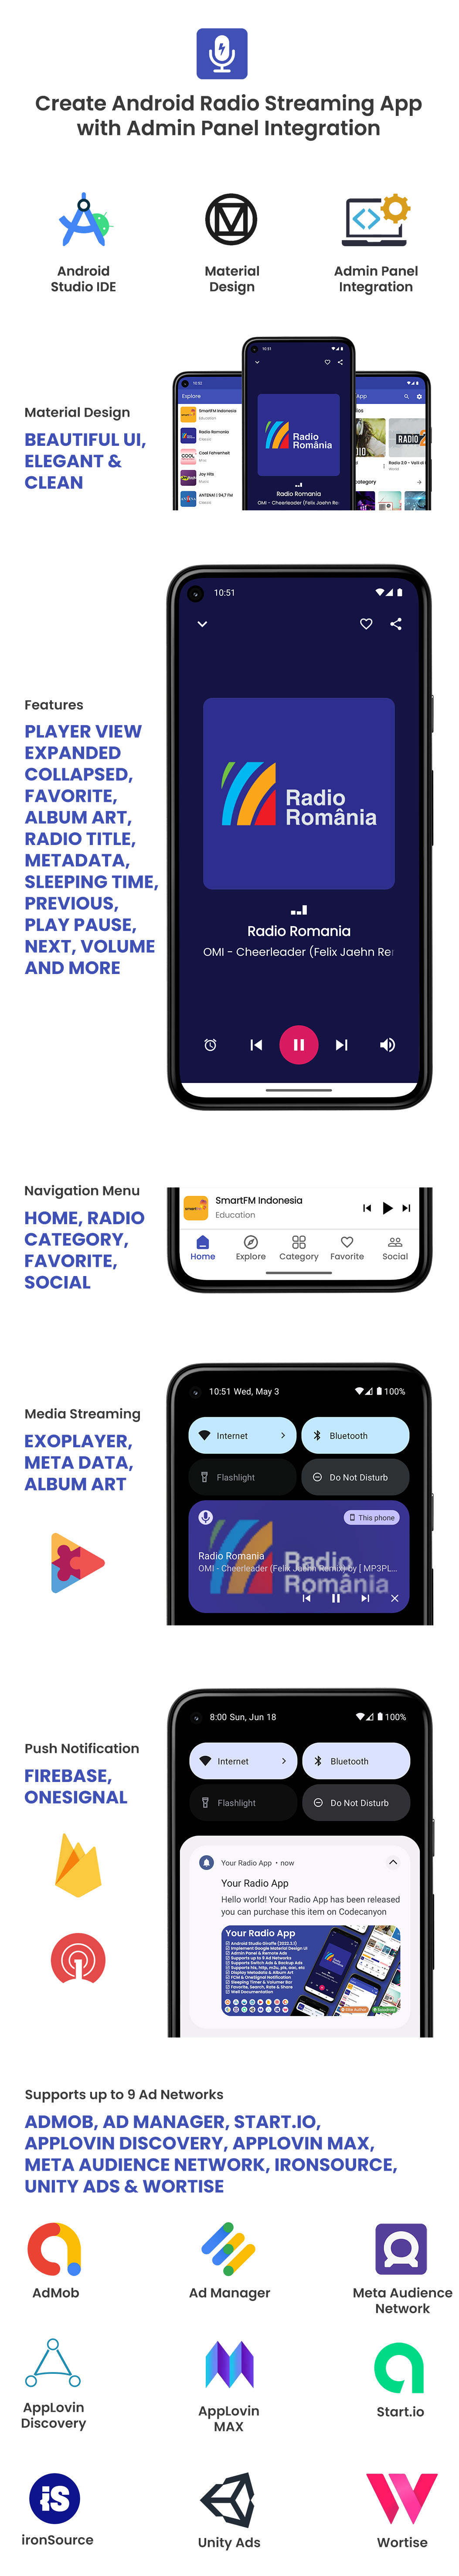 Your Radio App - 4